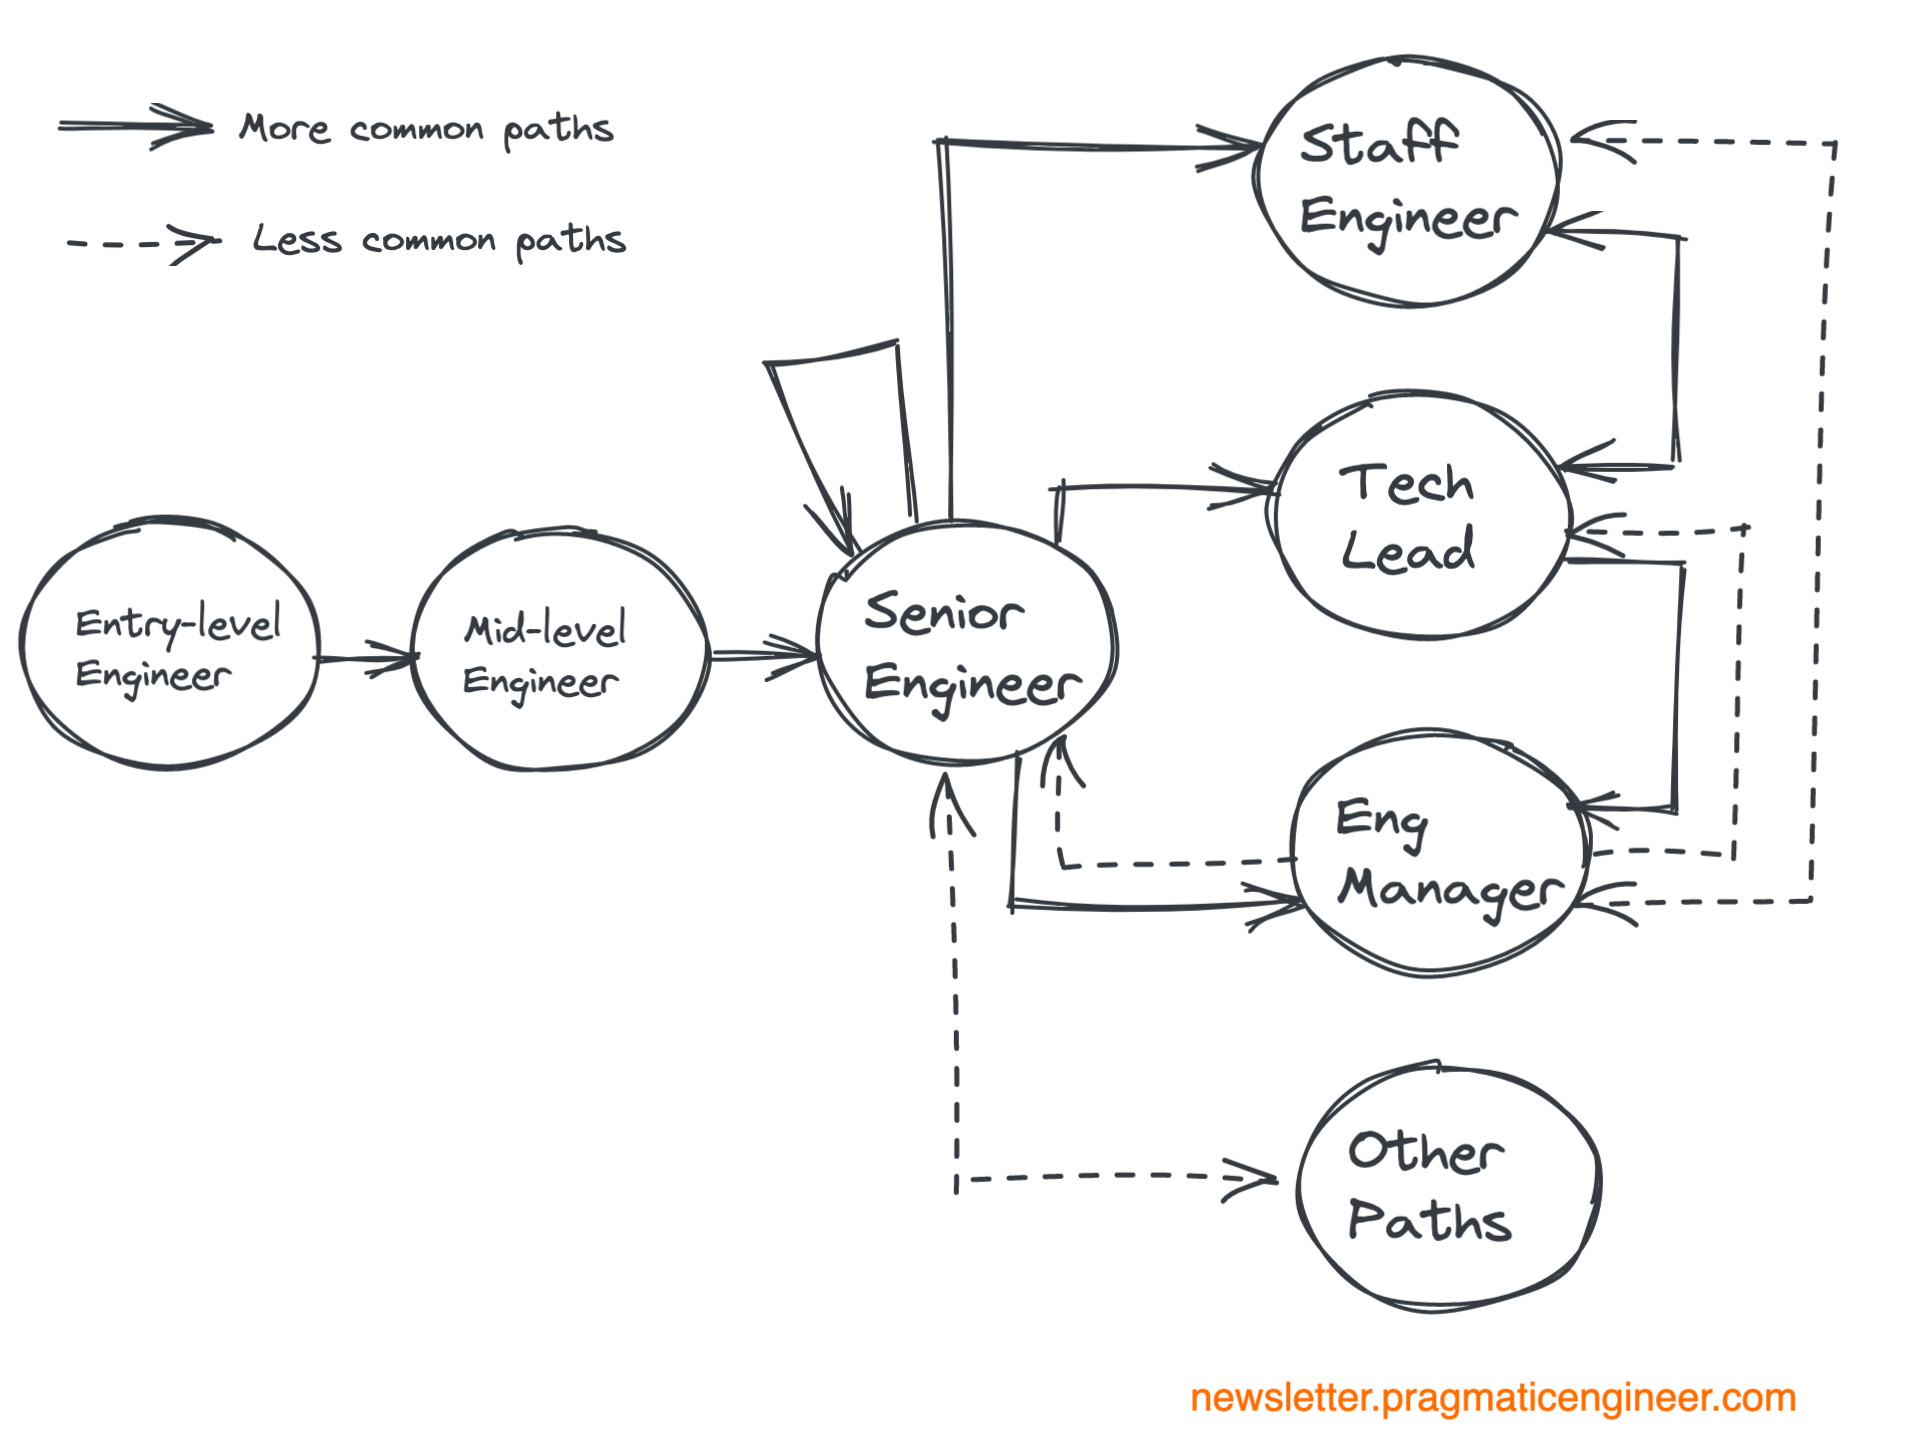 Engineering career paths as described in Pragmatic Engineer's recent blog.